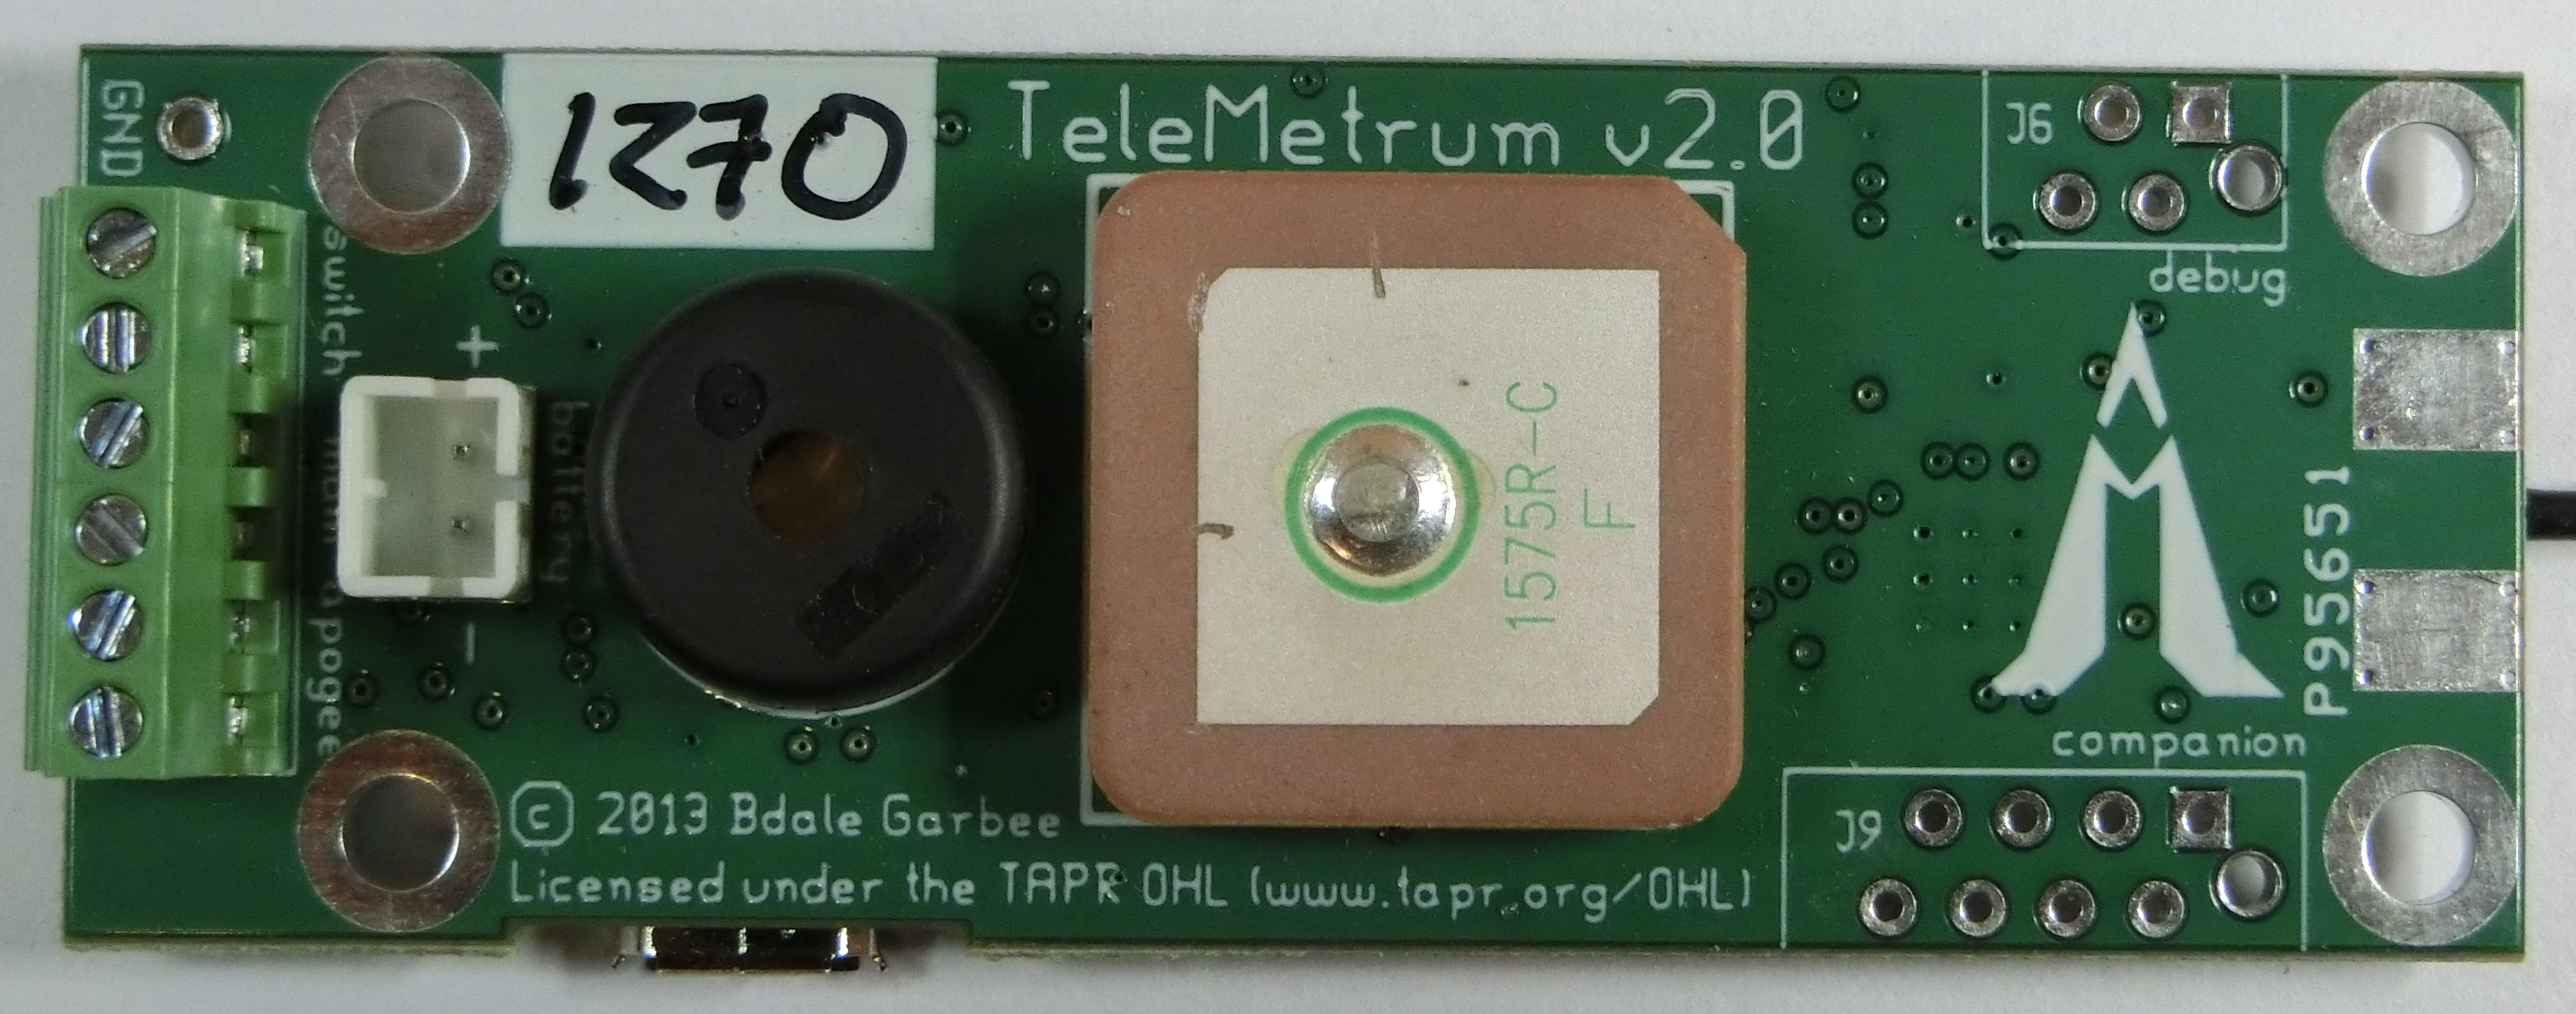 TeleMetrum/v2.0/telemetrum-v2.0-th.jpg